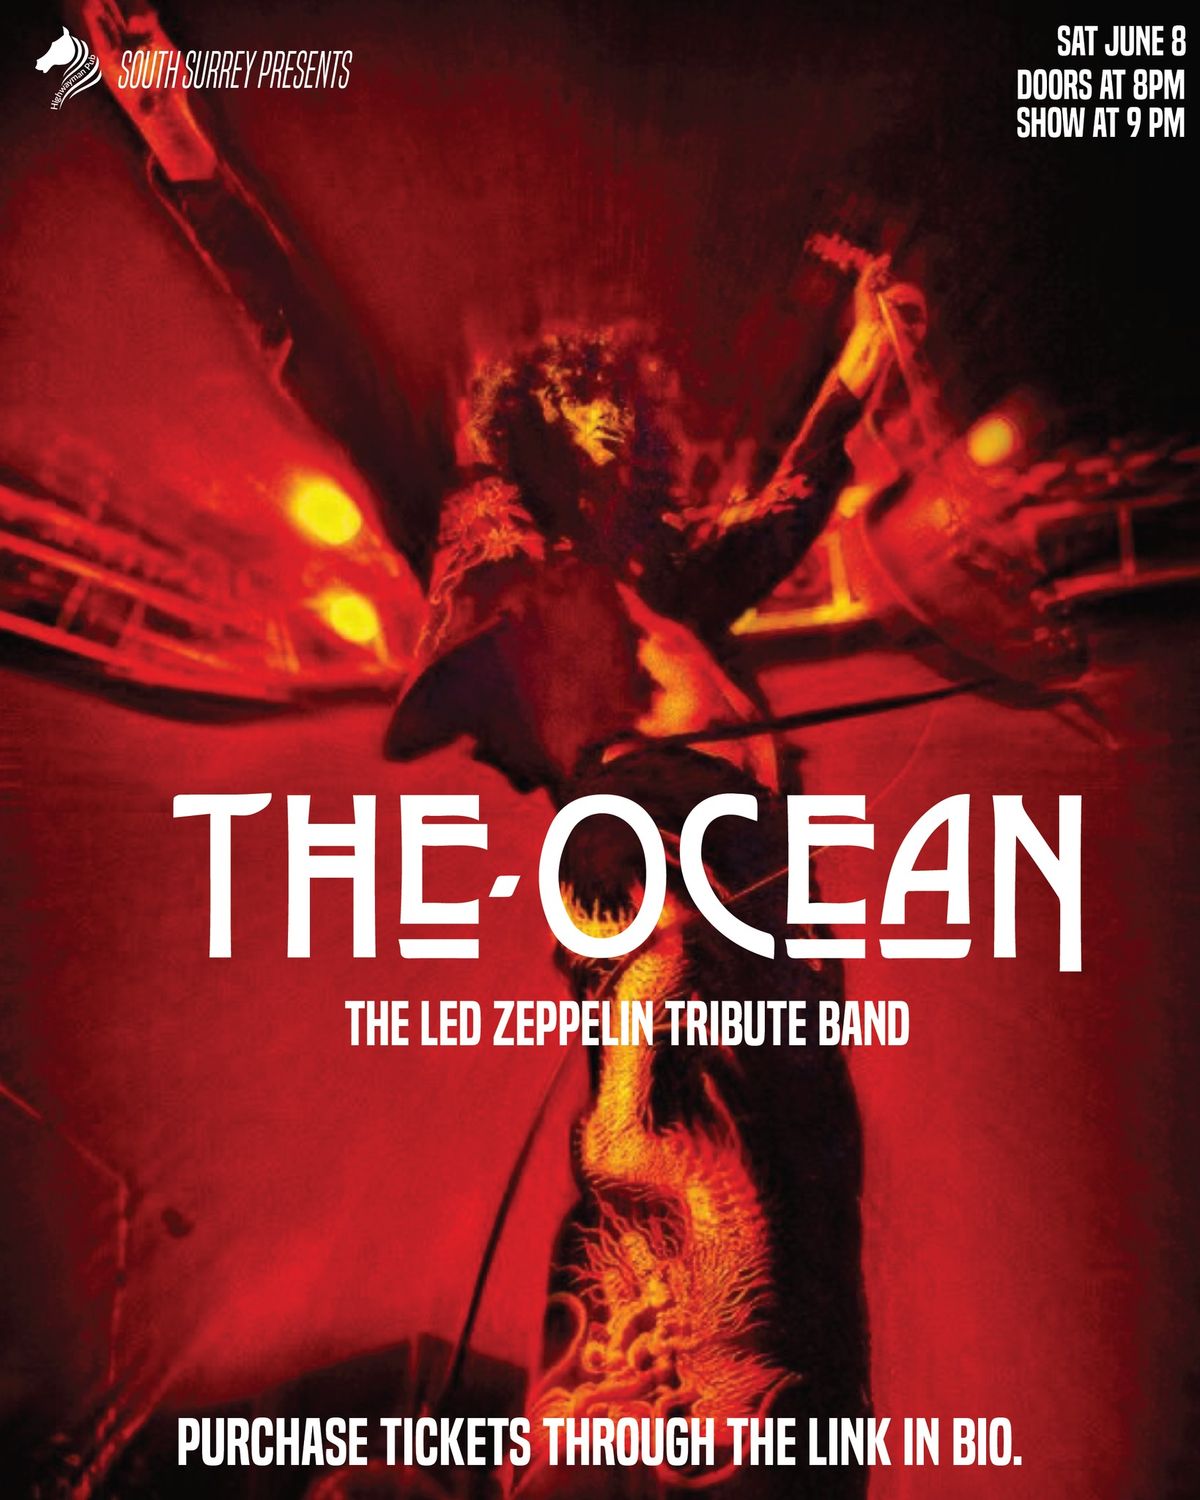 The Ocean Led Zeppelin Tribute Band